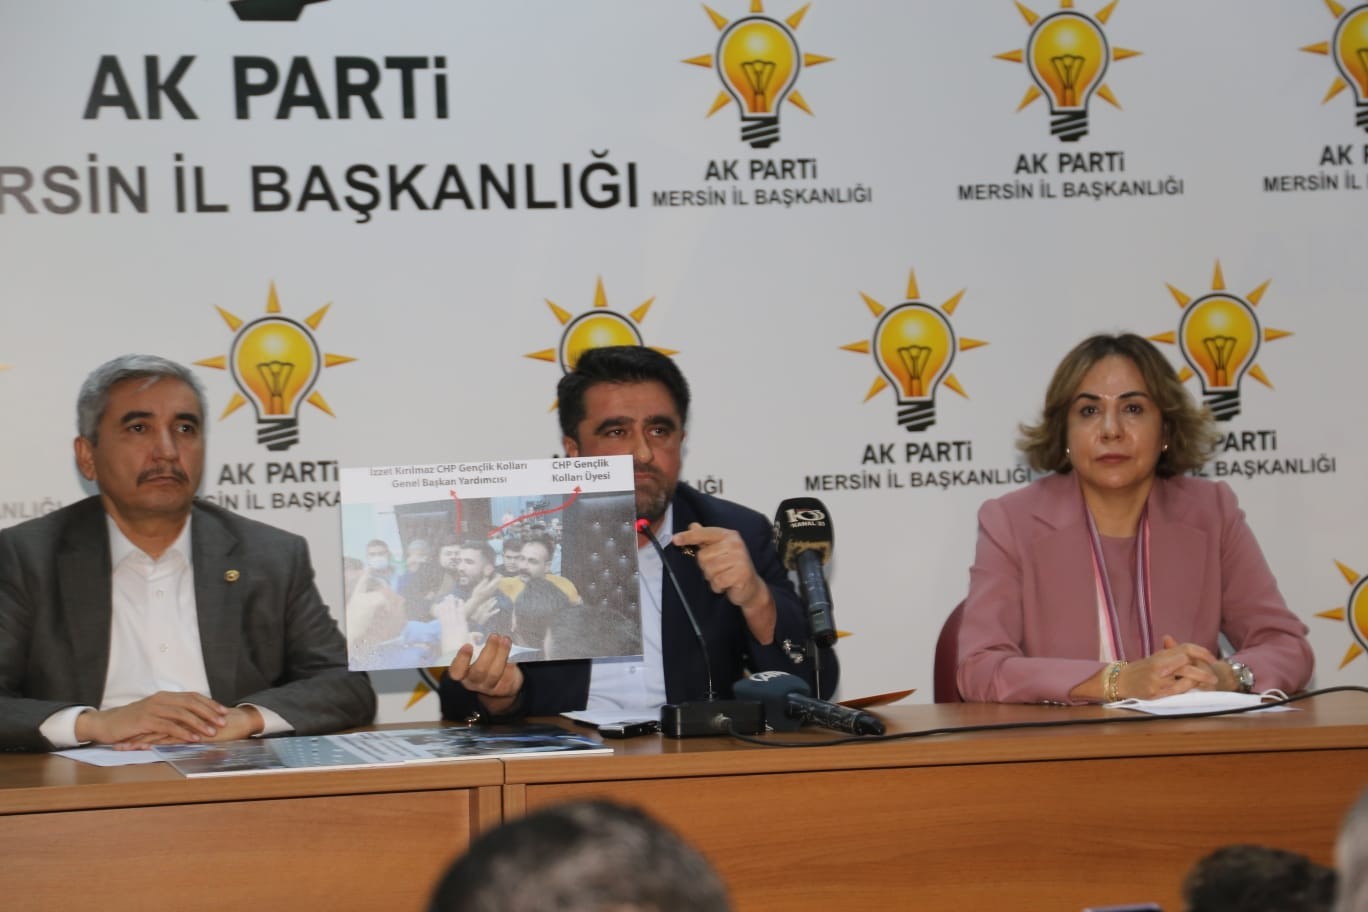 AK Parti İl Başkanı Ercik: “CHP, Mersin’deki miting yeri tartışmasıyla algı oluşturuyor”